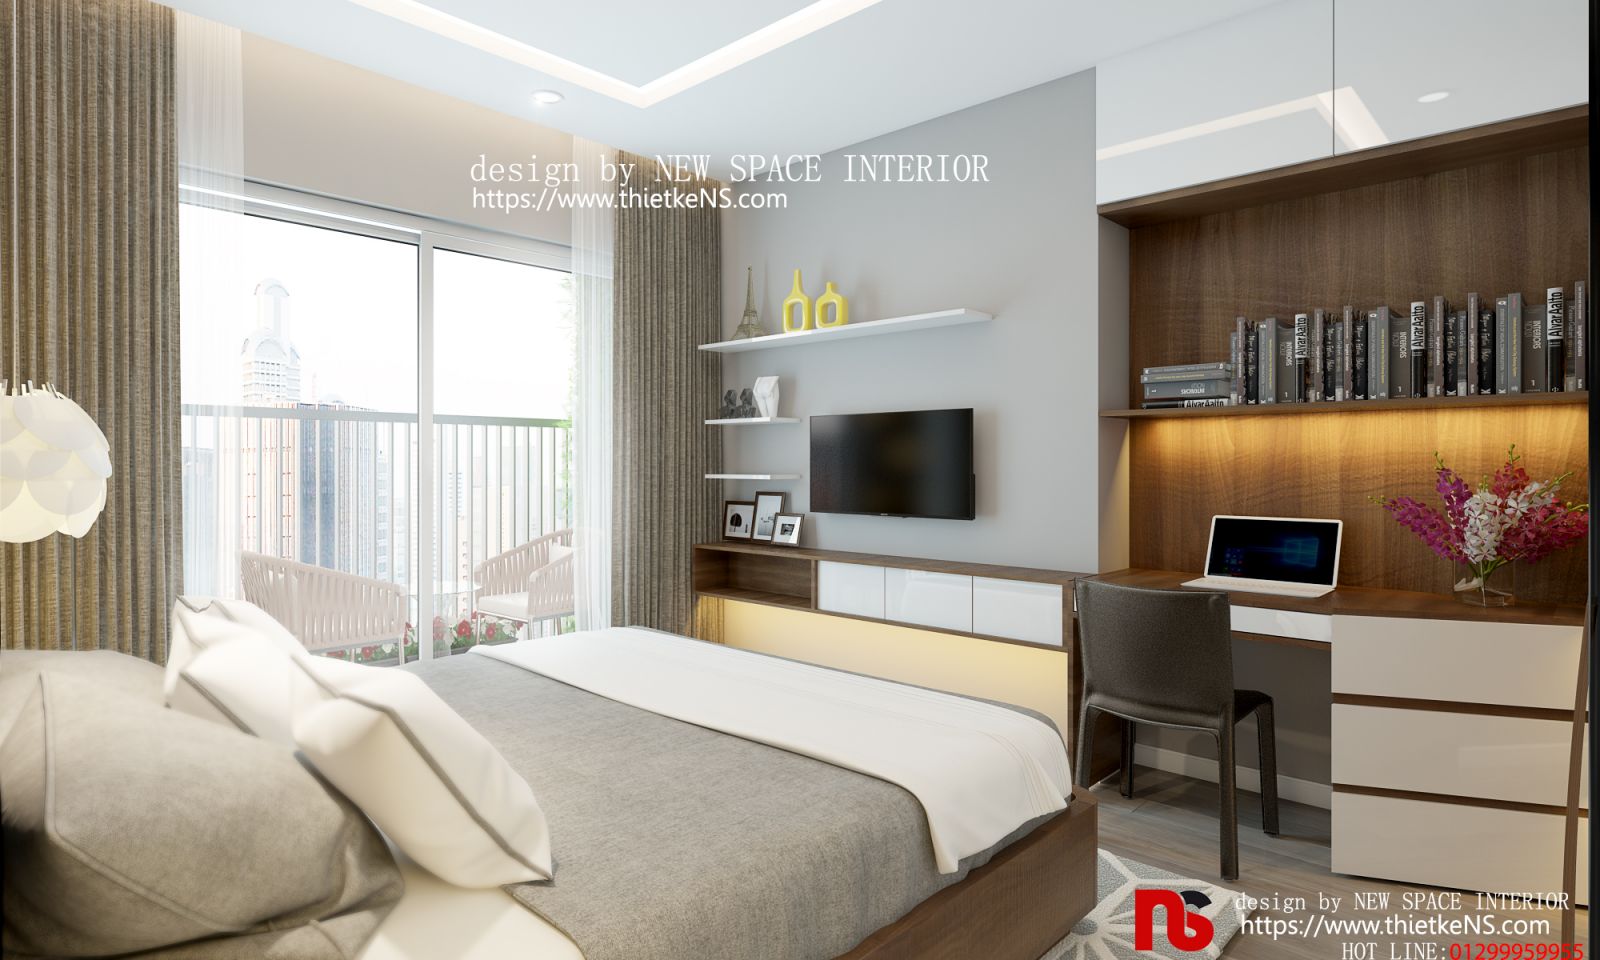 Thiết kế nội thất chung cư phòng ngủ hiện đại, đẳng cấp